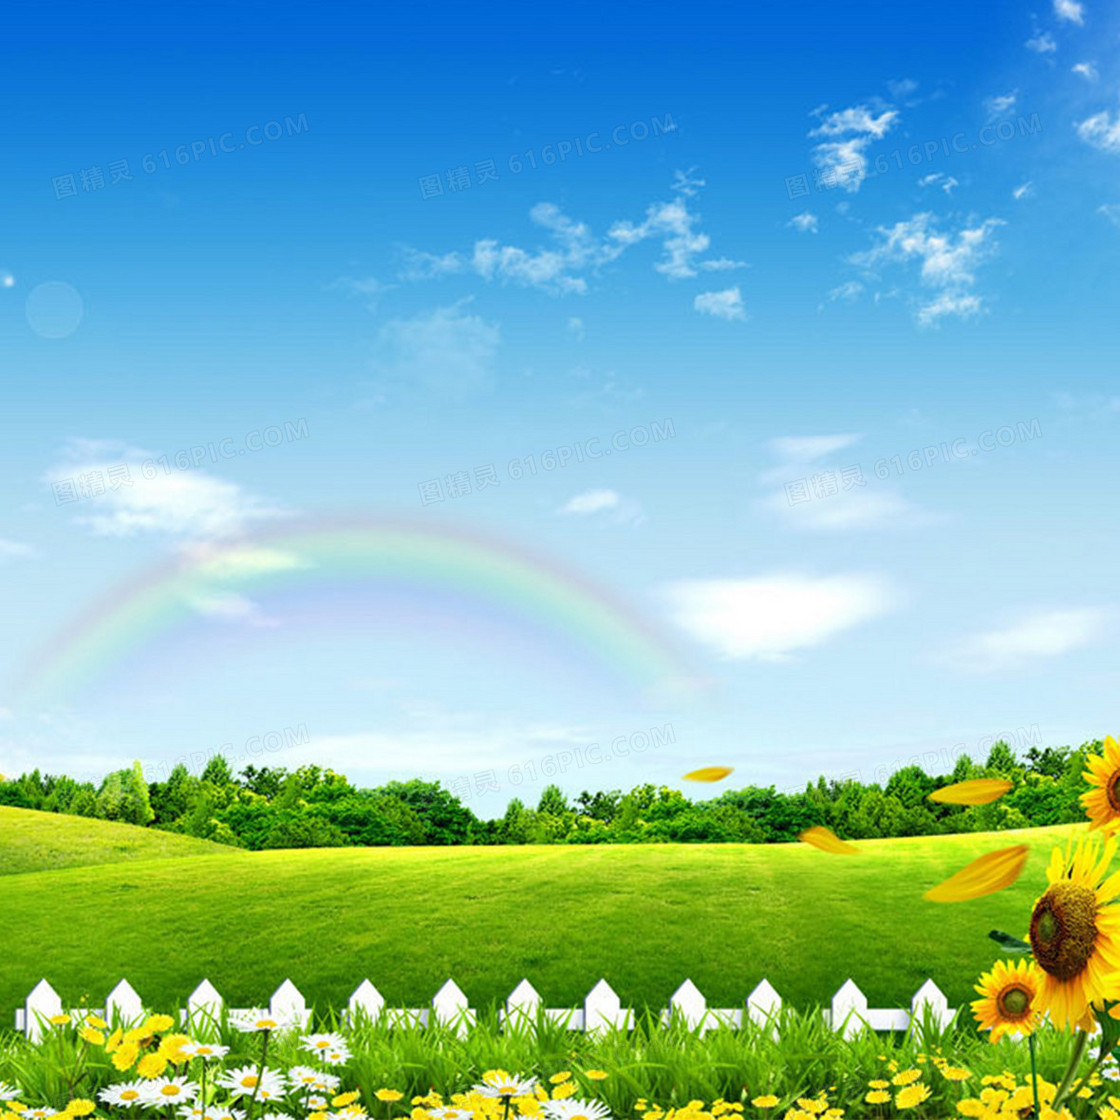 清新明亮春天蓝天白云阳光下一望无际广阔的开满鲜花的草地风景图 - PSD素材网